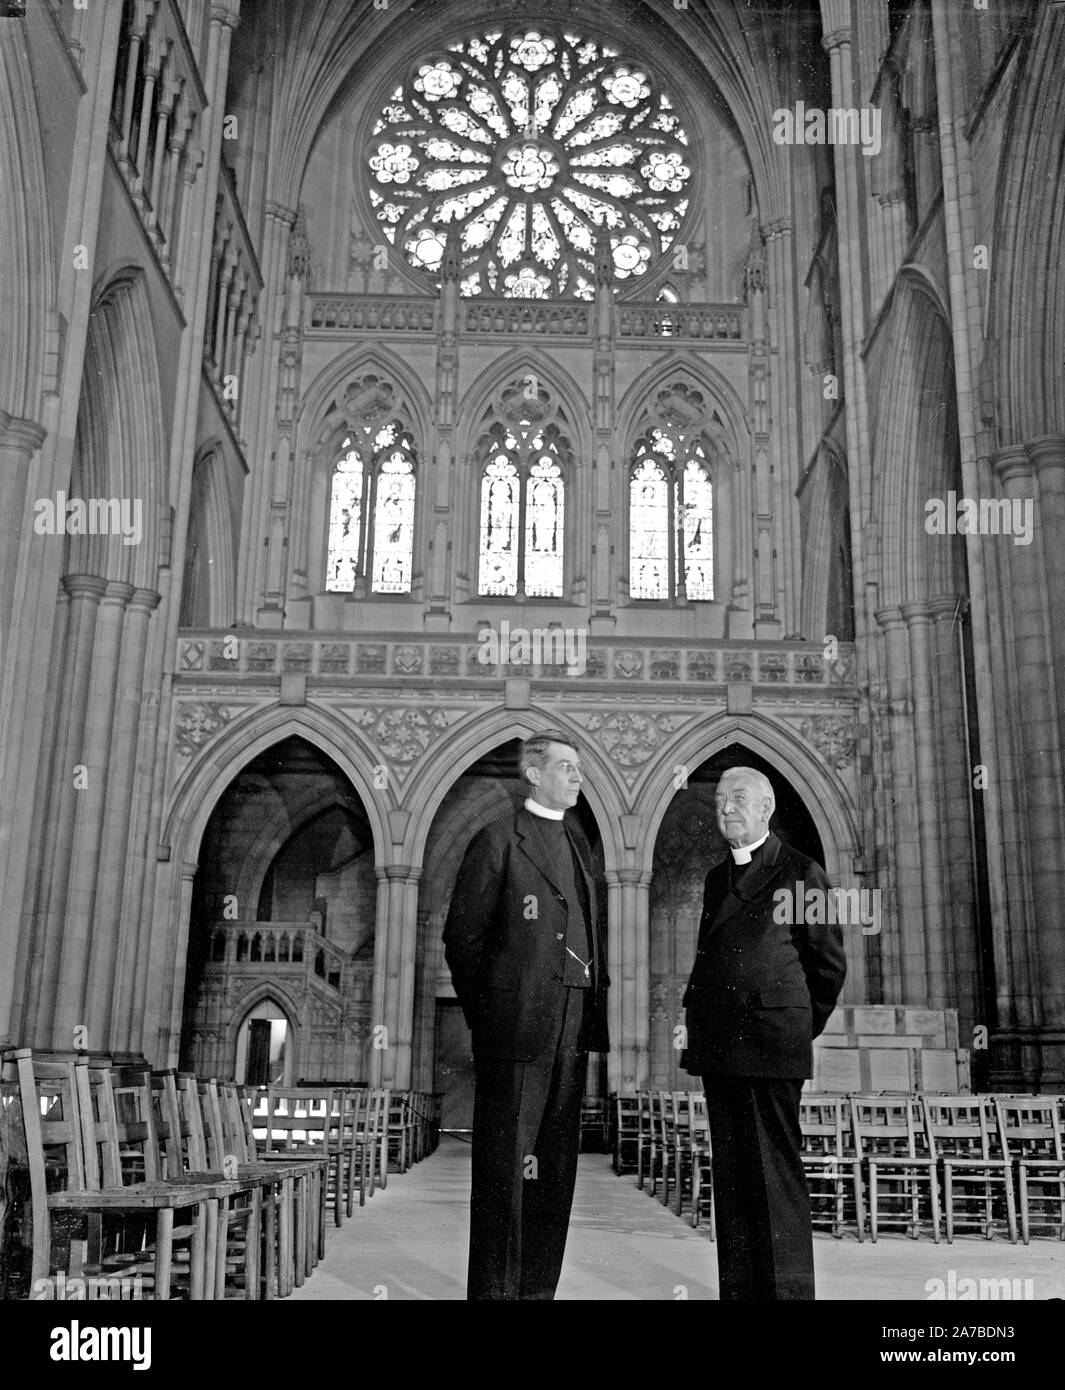 Con la Cattedrale di Washington a Washington D.C. - Il diritto Rev. James E. Freeman (r) vescovo di Washington e il Rev.mo Nobile. C. Powell, D.D. (L) ca. Settembre 14, 1937 Foto Stock